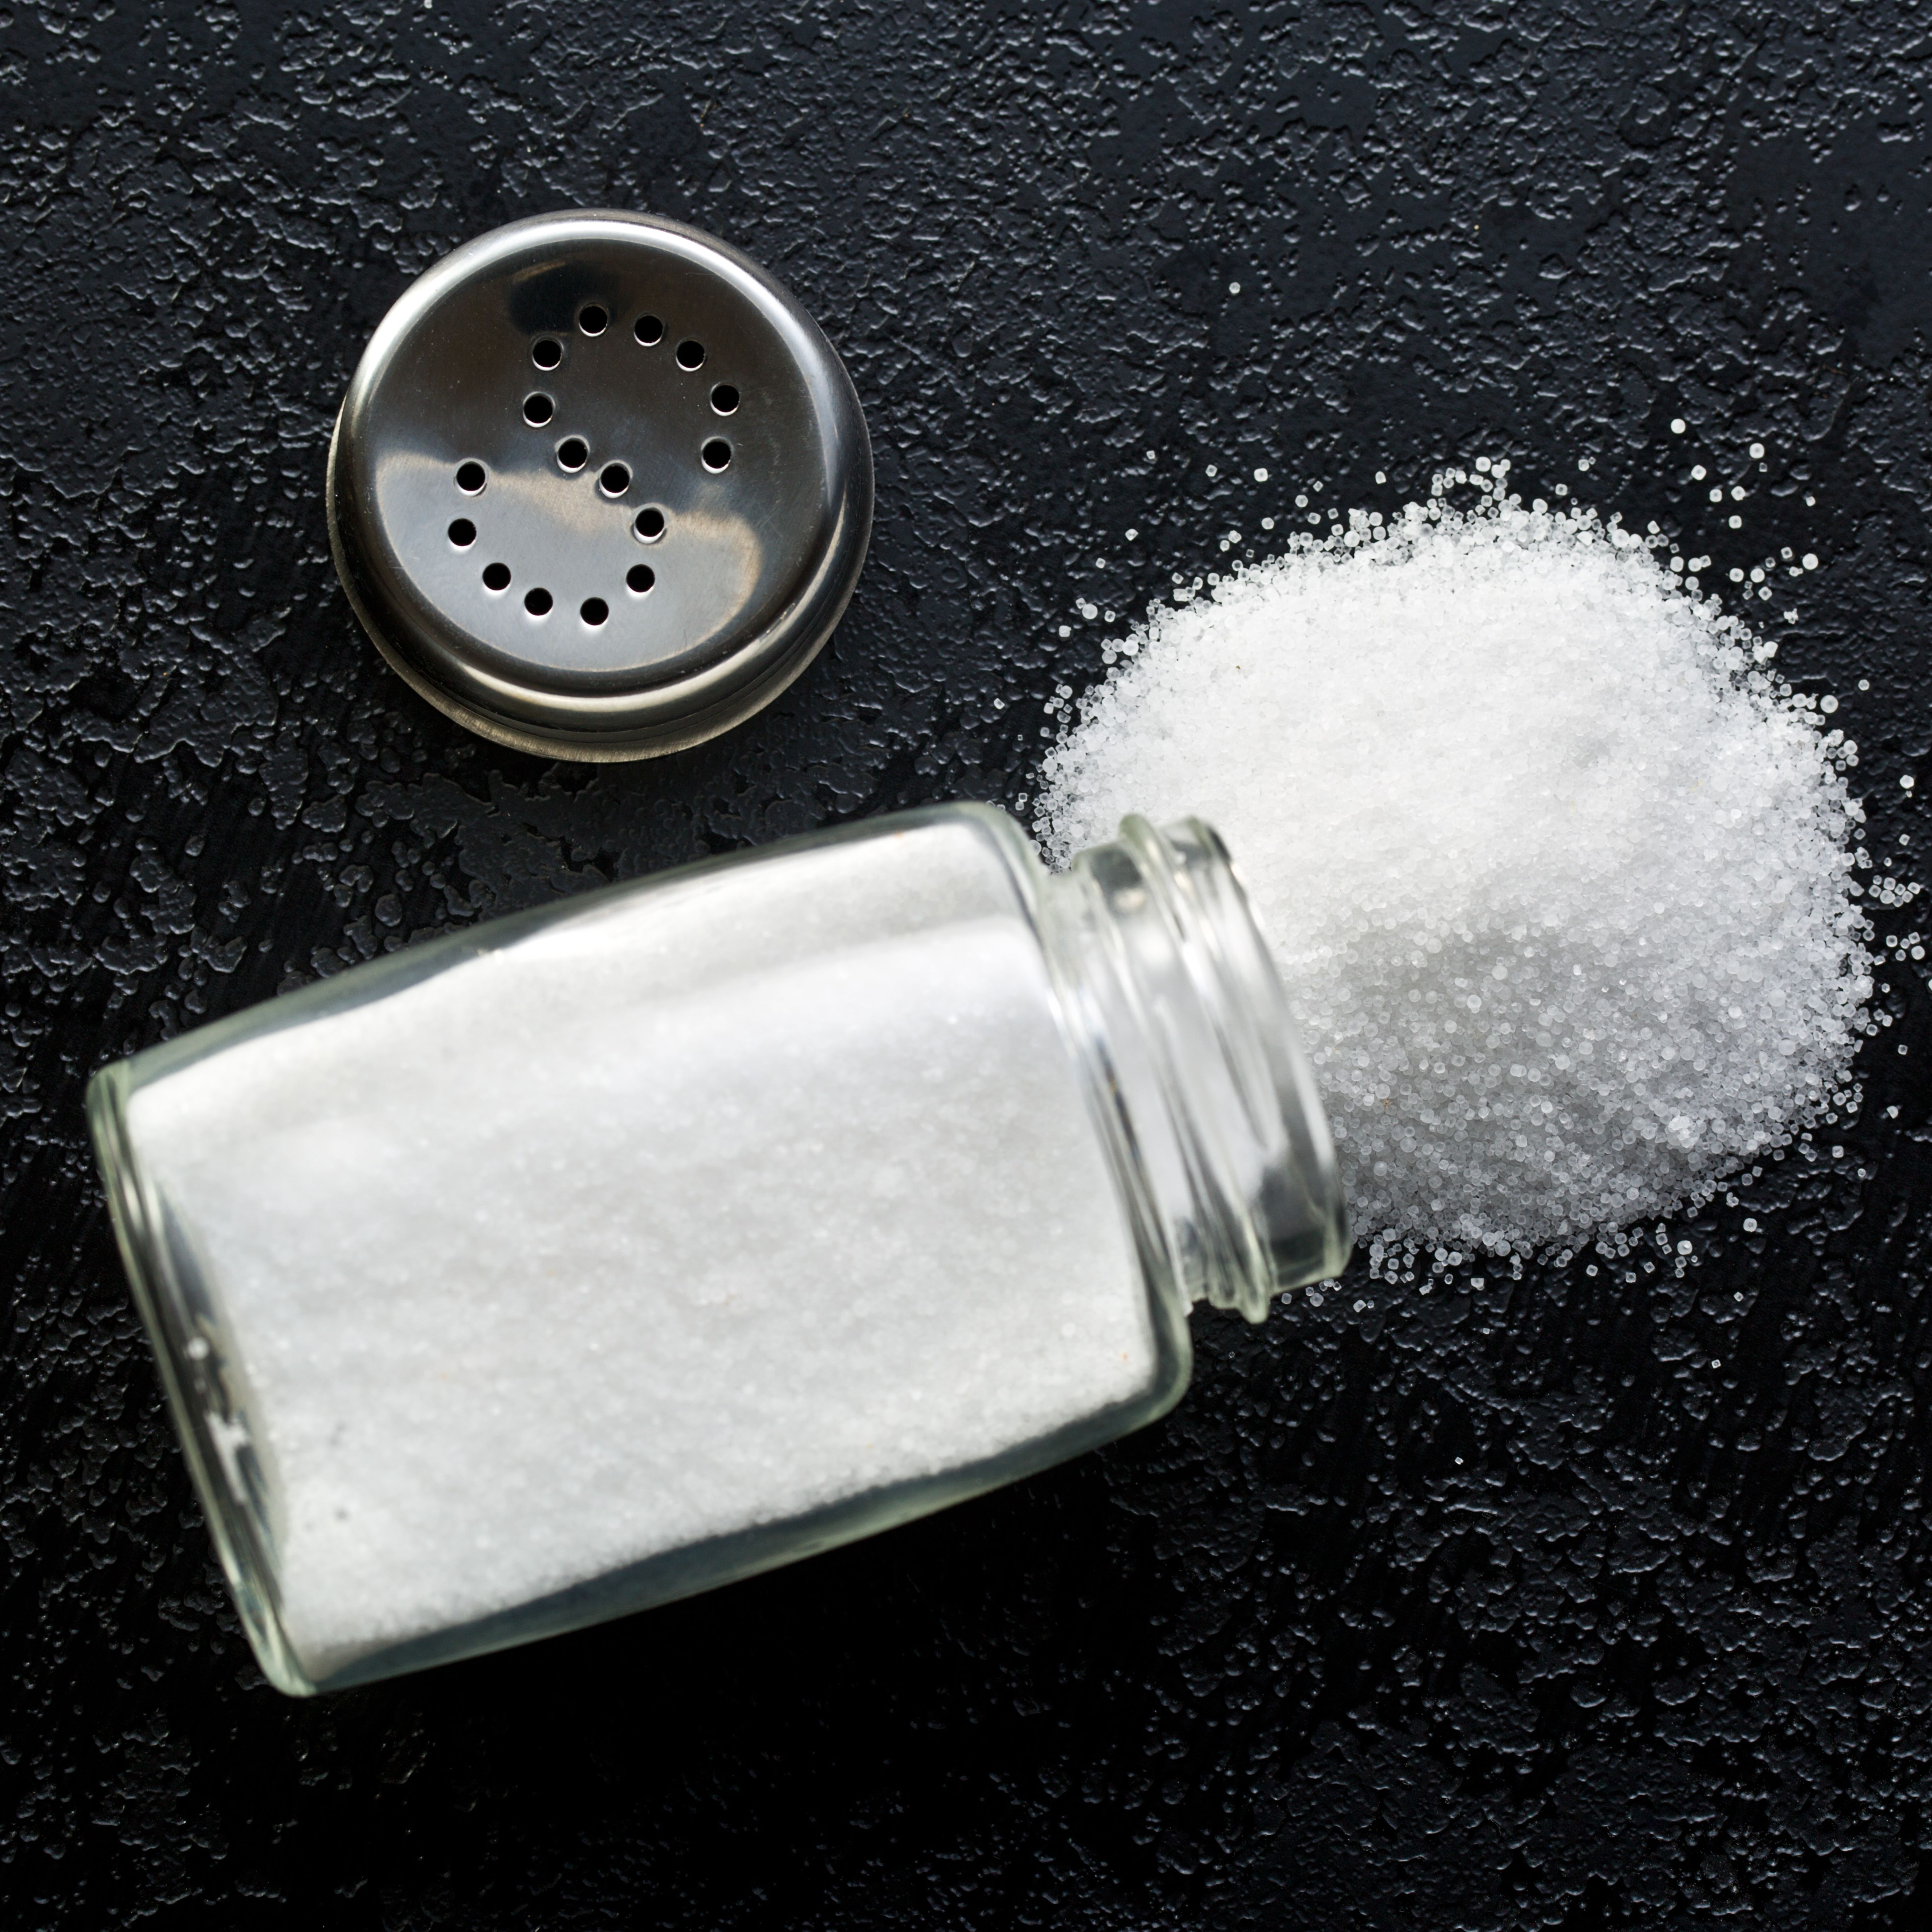 Sel : quelles variétés de sel choisir pour cuisiner ?